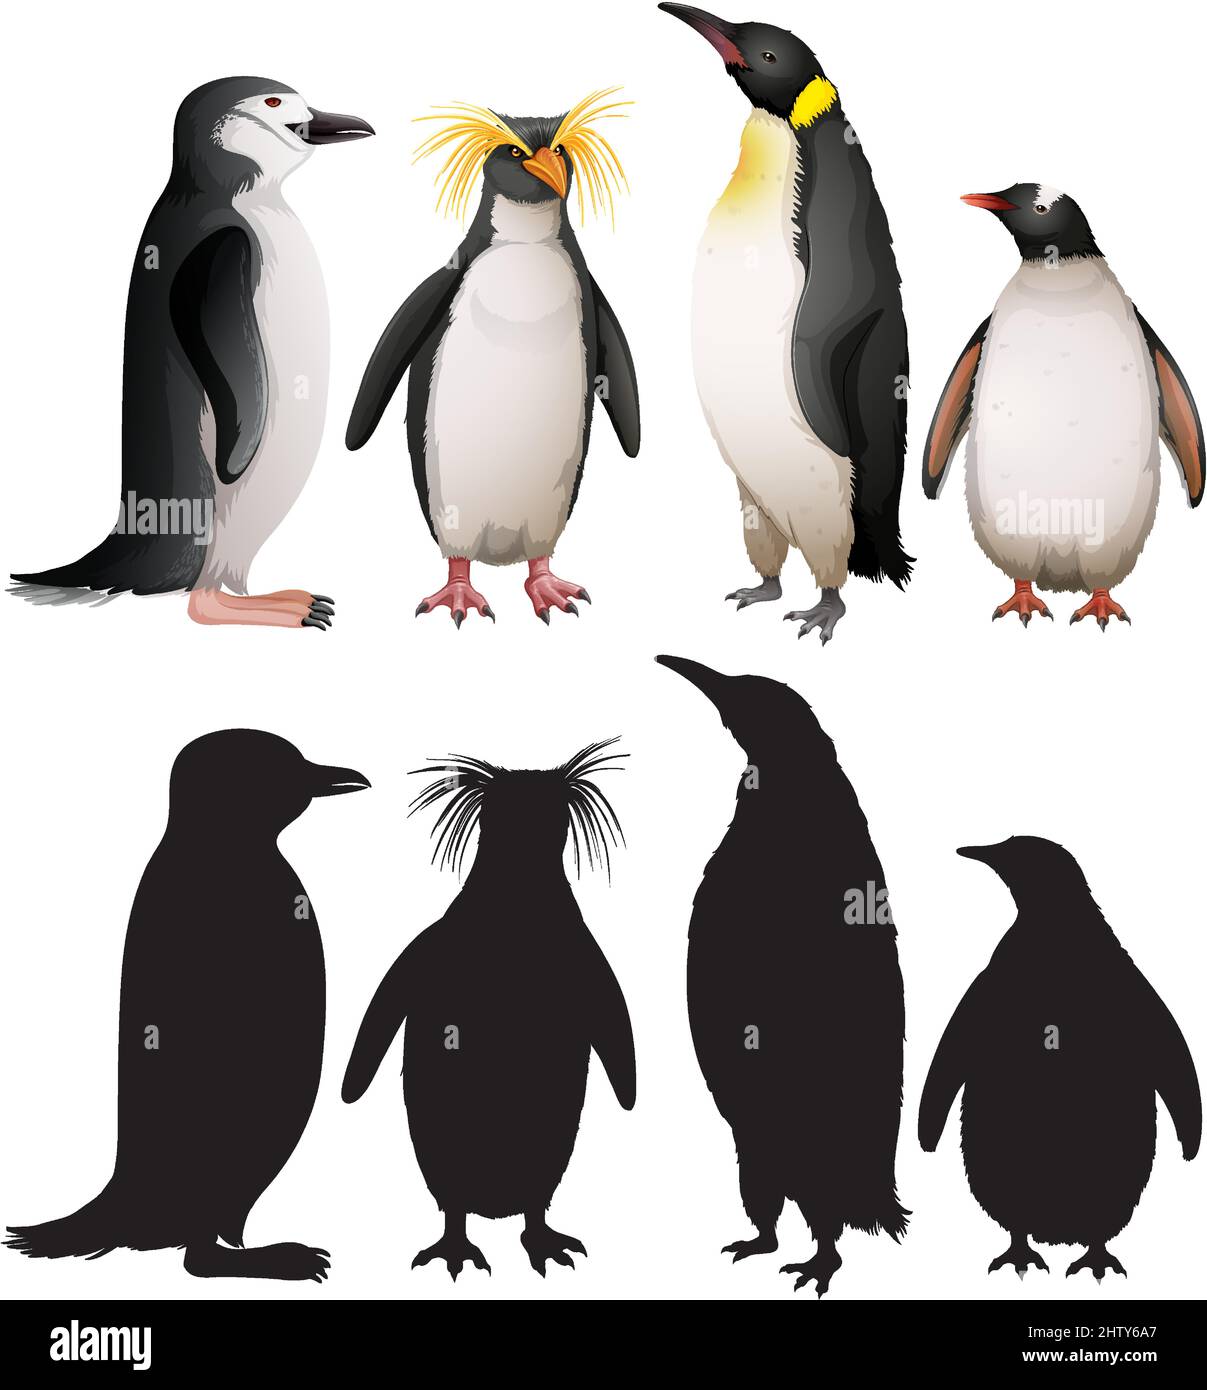 Ensemble de pingouins avec illustration de silhouette Illustration de Vecteur